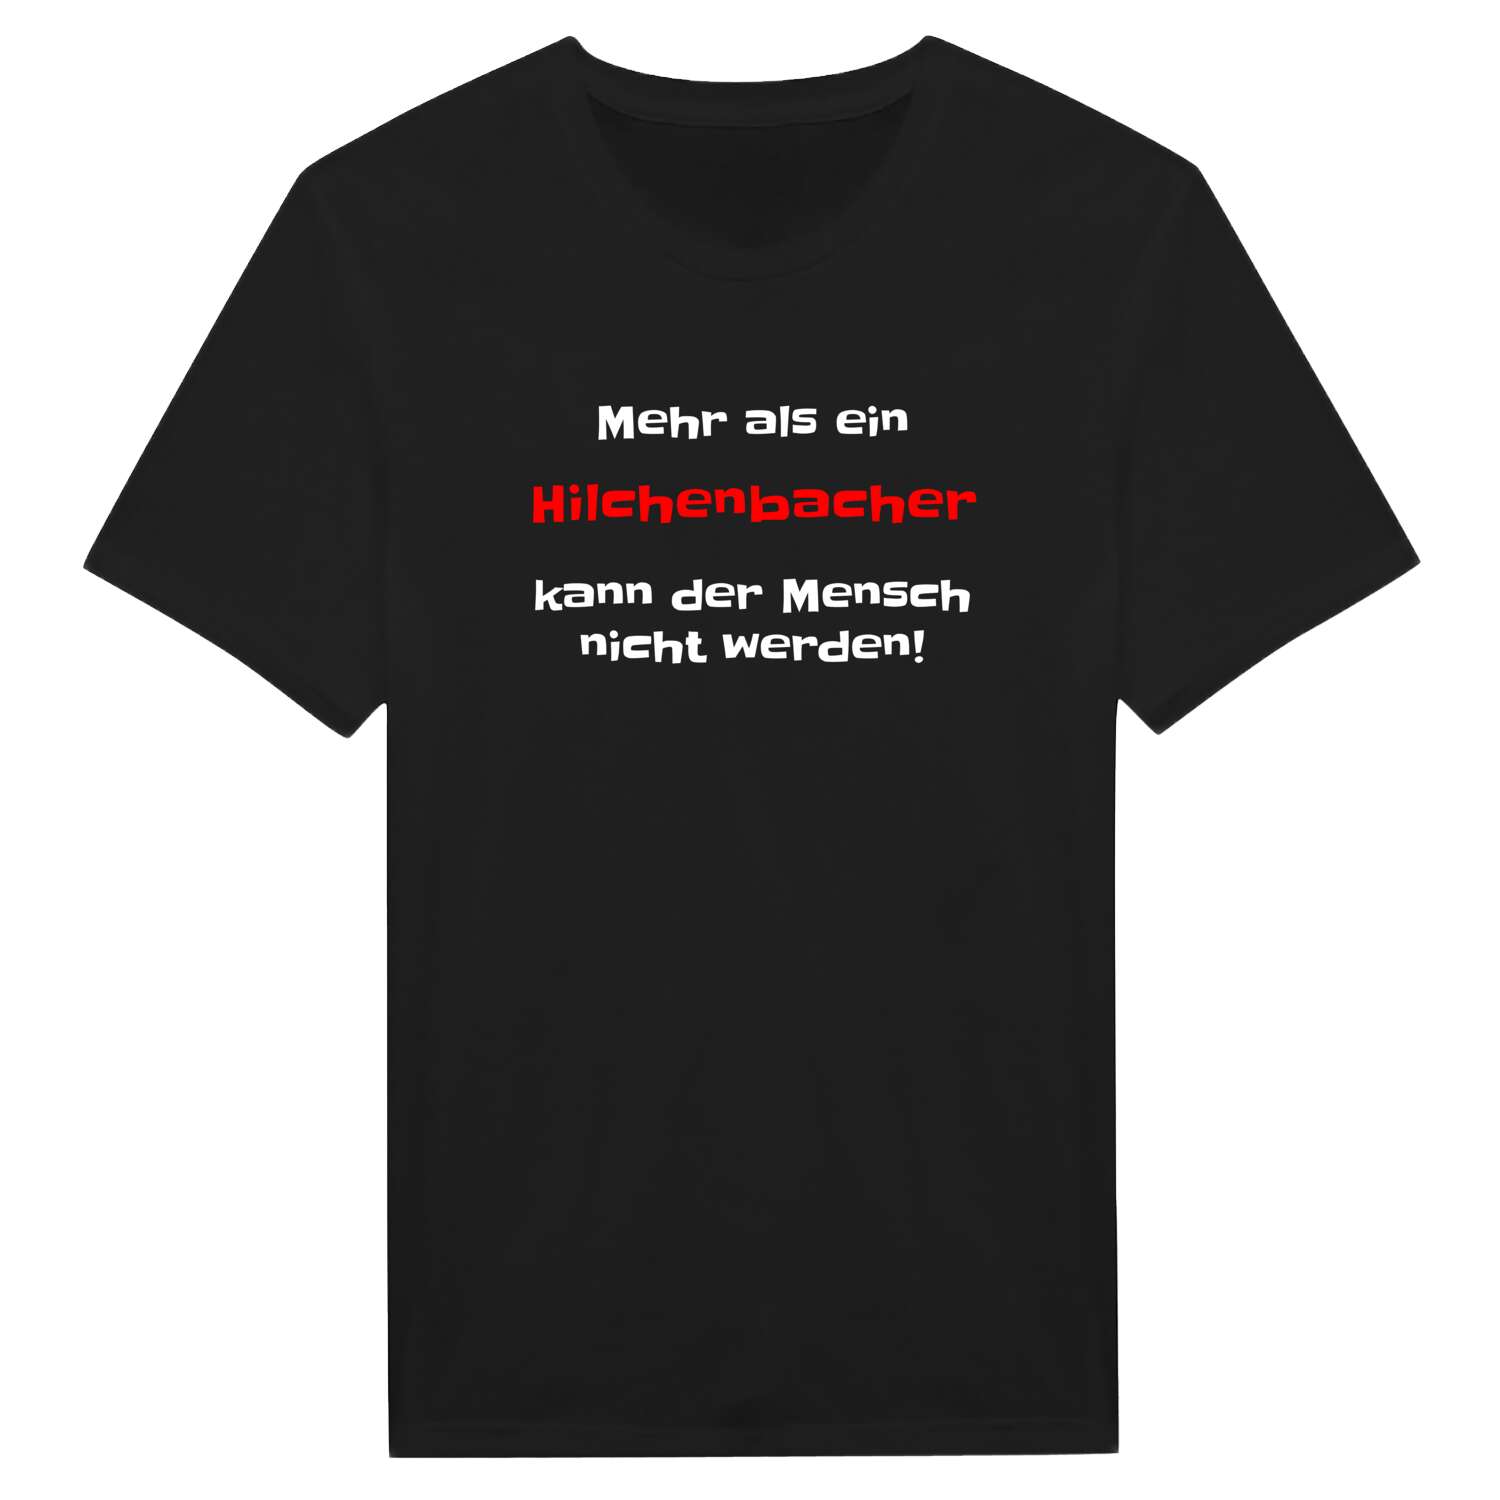 Hilchenbach T-Shirt »Mehr als ein«